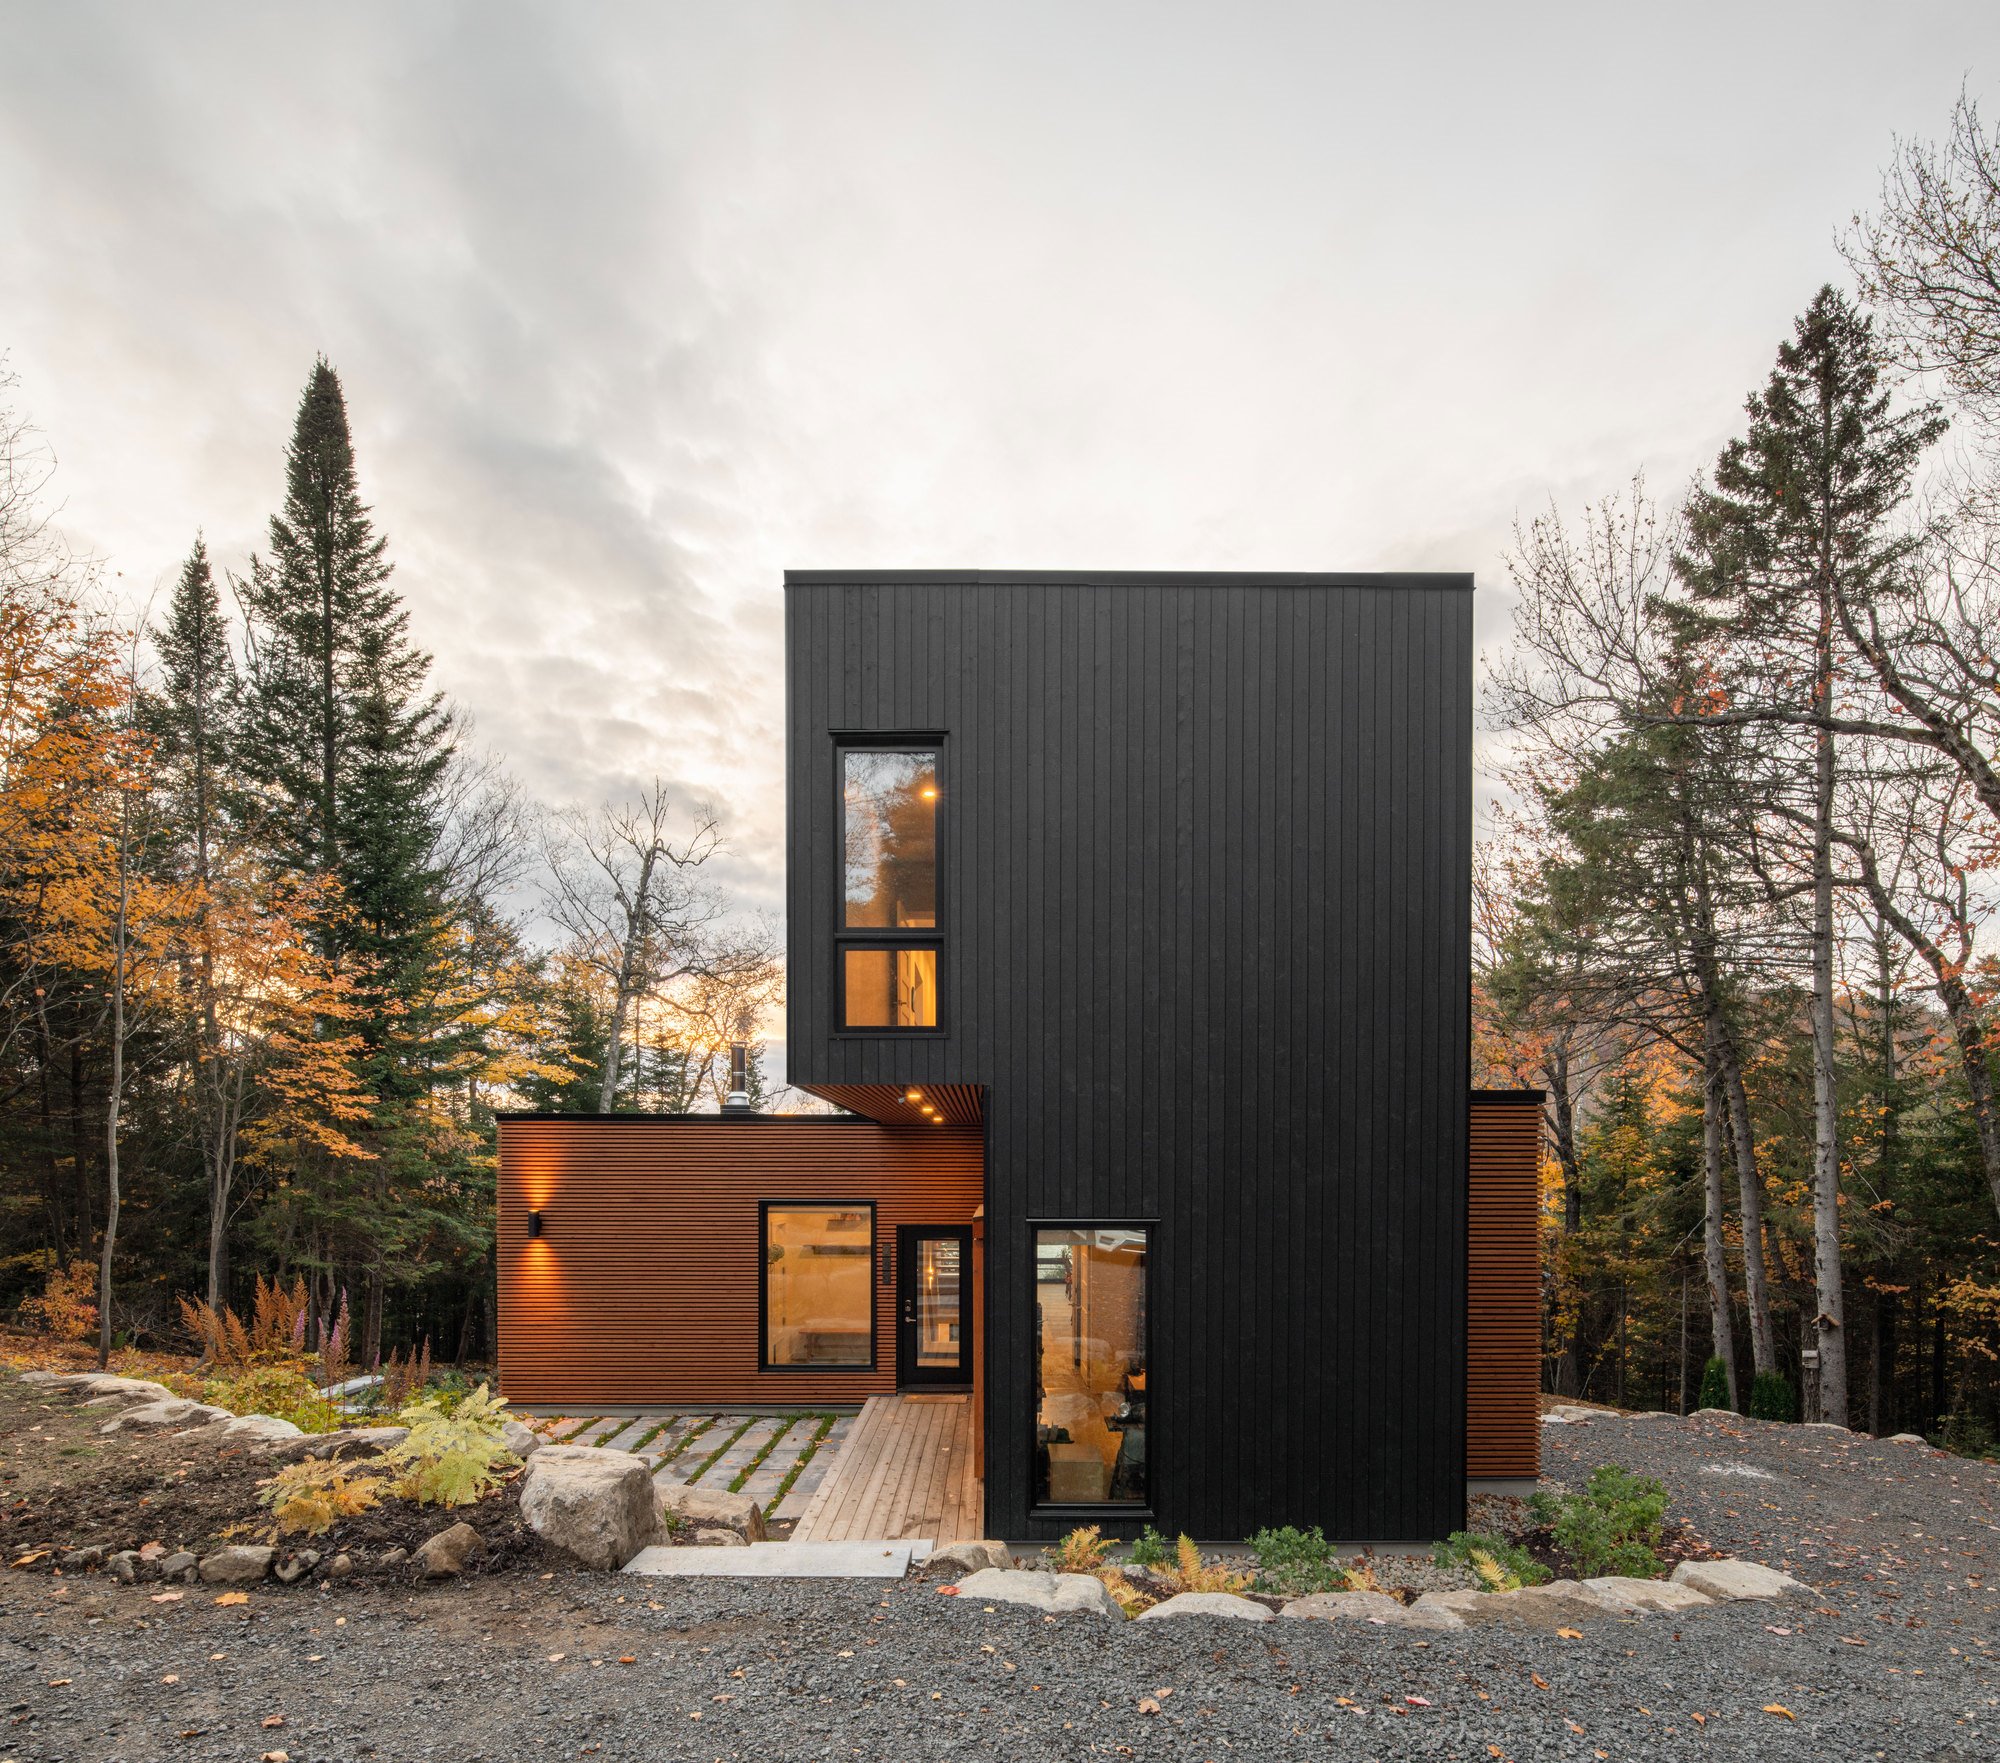 Fachada en color negro de una casa prefabricada en Canadá de madera